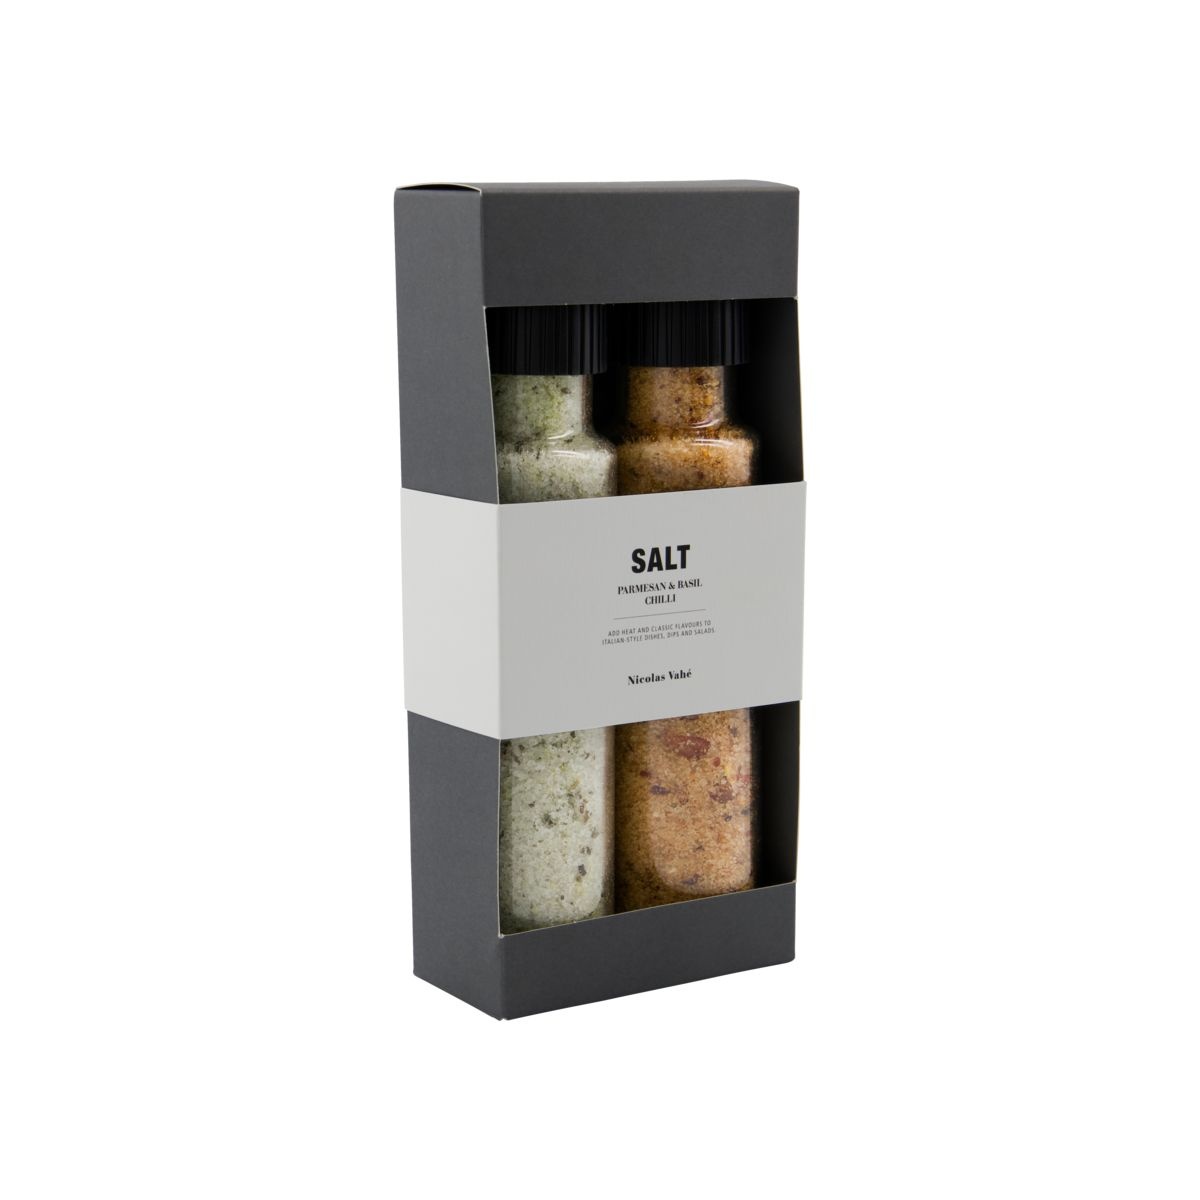 Nicolas Vahe Cadeaubox Parmesan & Basil salt & Chilli salt